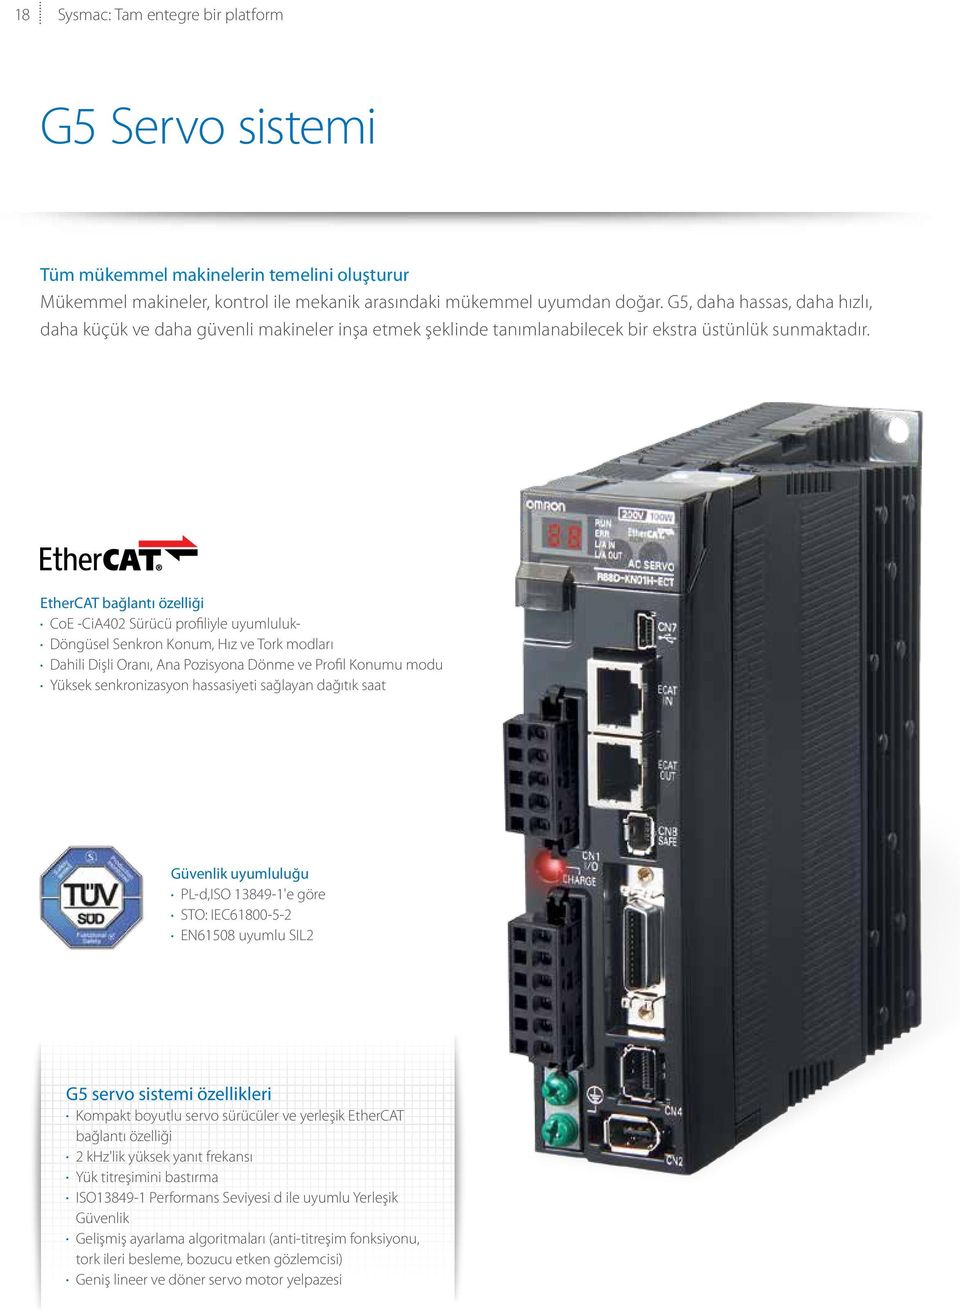 EtherCAT bağlantı özelliği CoE -CiA402 Sürücü profiliyle uyumluluk- Döngüsel Senkron Konum, Hız ve Tork modları Dahili Dişli Oranı, Ana Pozisyona Dönme ve Profil Konumu modu Yüksek senkronizasyon